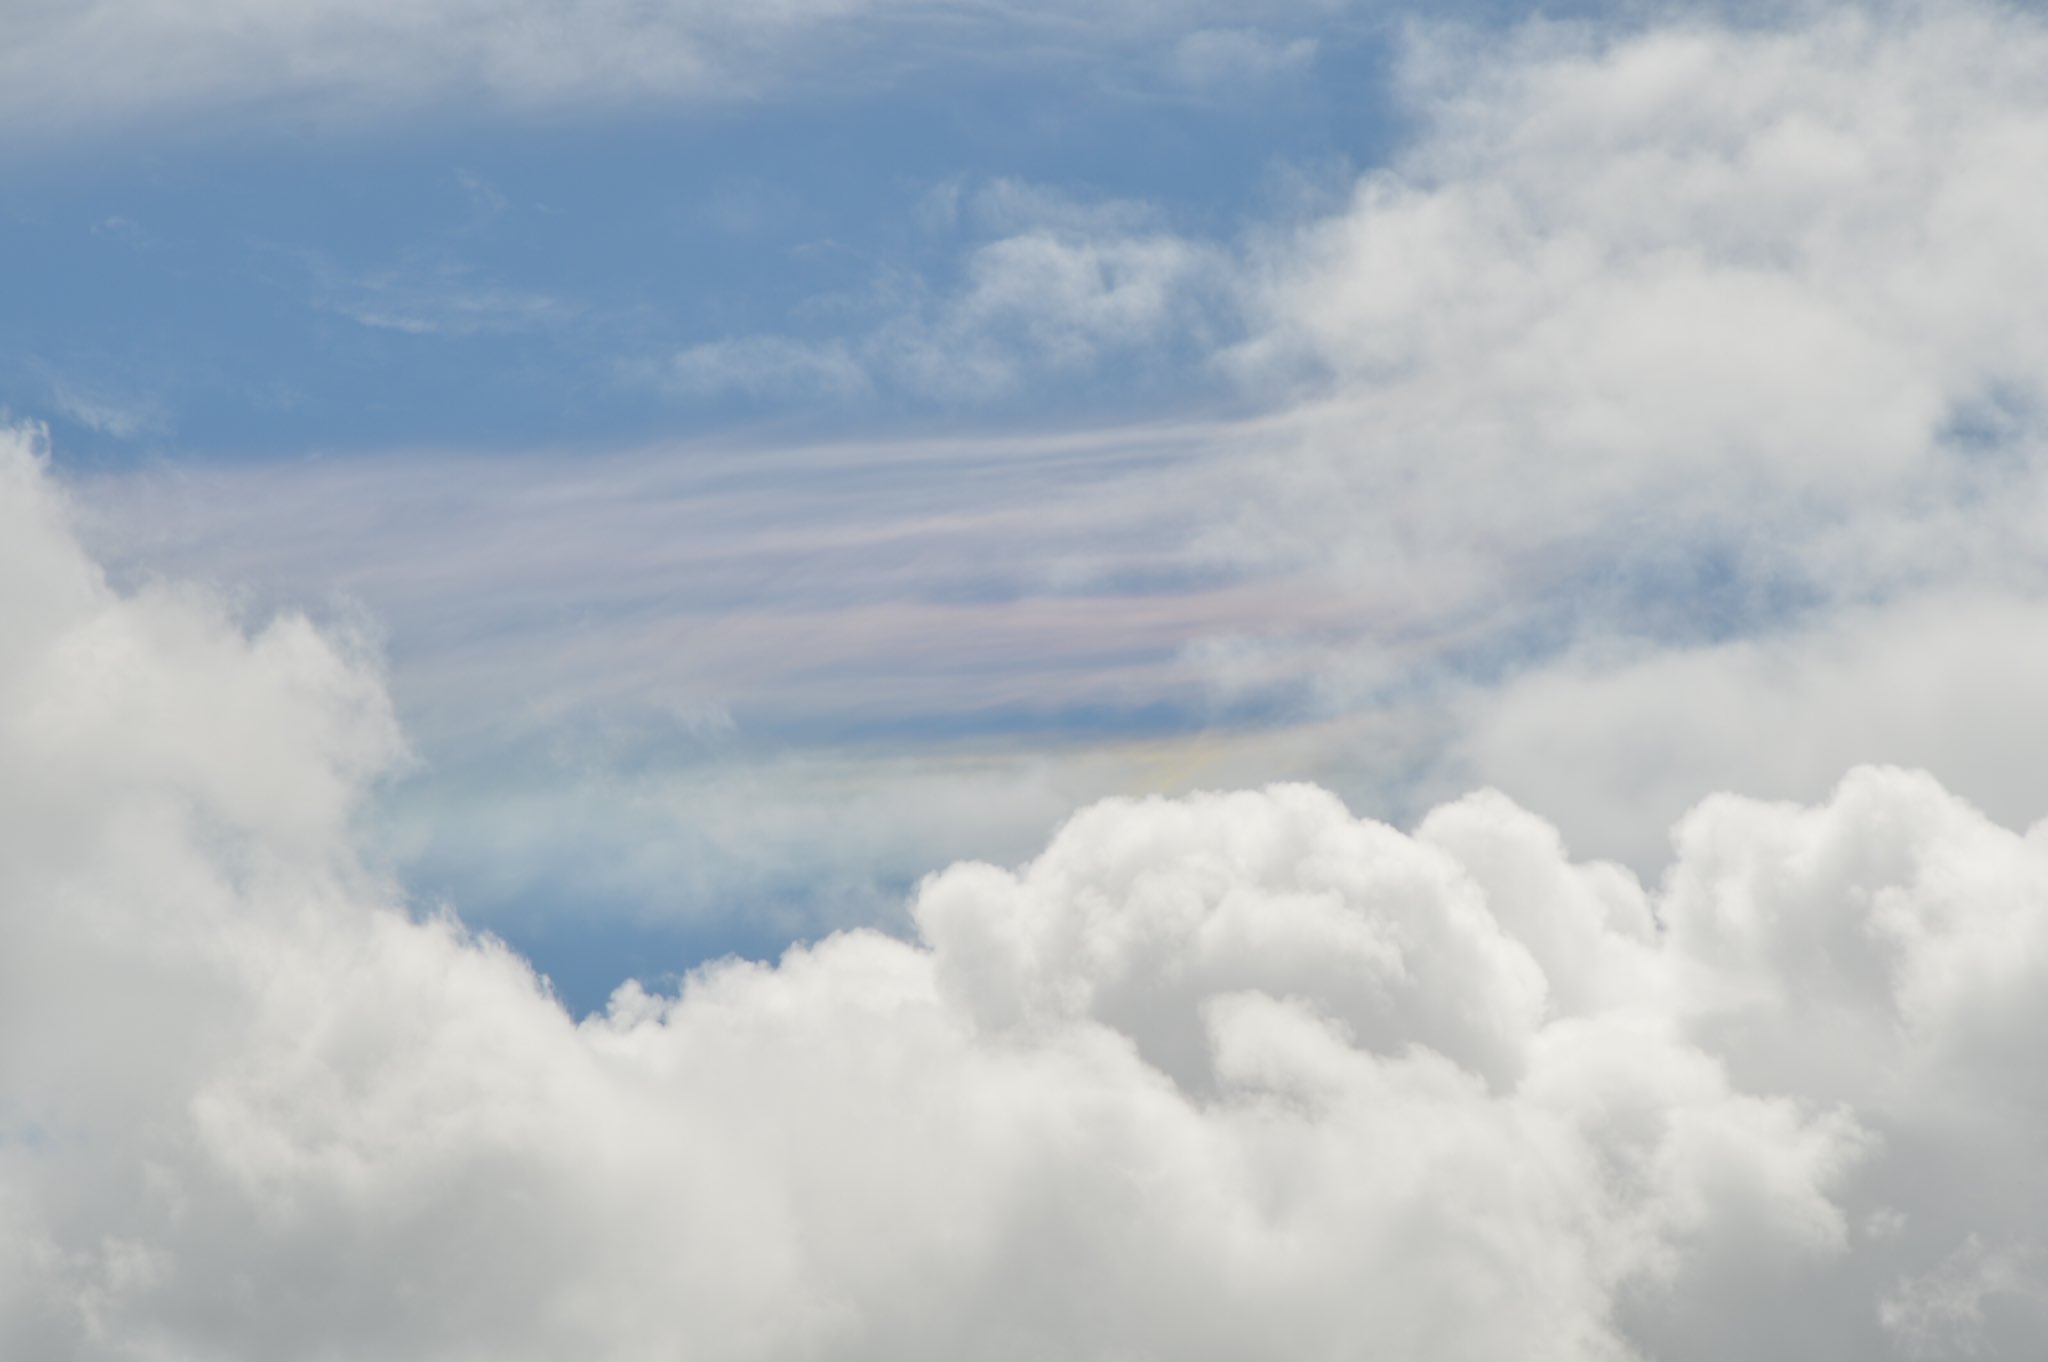 38 今日のお昼にみた謎の雲 白い雲の中にピンクと黄色の雲 初めてみた何故ここだけに色がつくのか 可愛いのに謎 良く有ることなのか 夏の雲 謎の雲 可愛い 謎 初めてみた T Co 42vbbzqnks Twitter